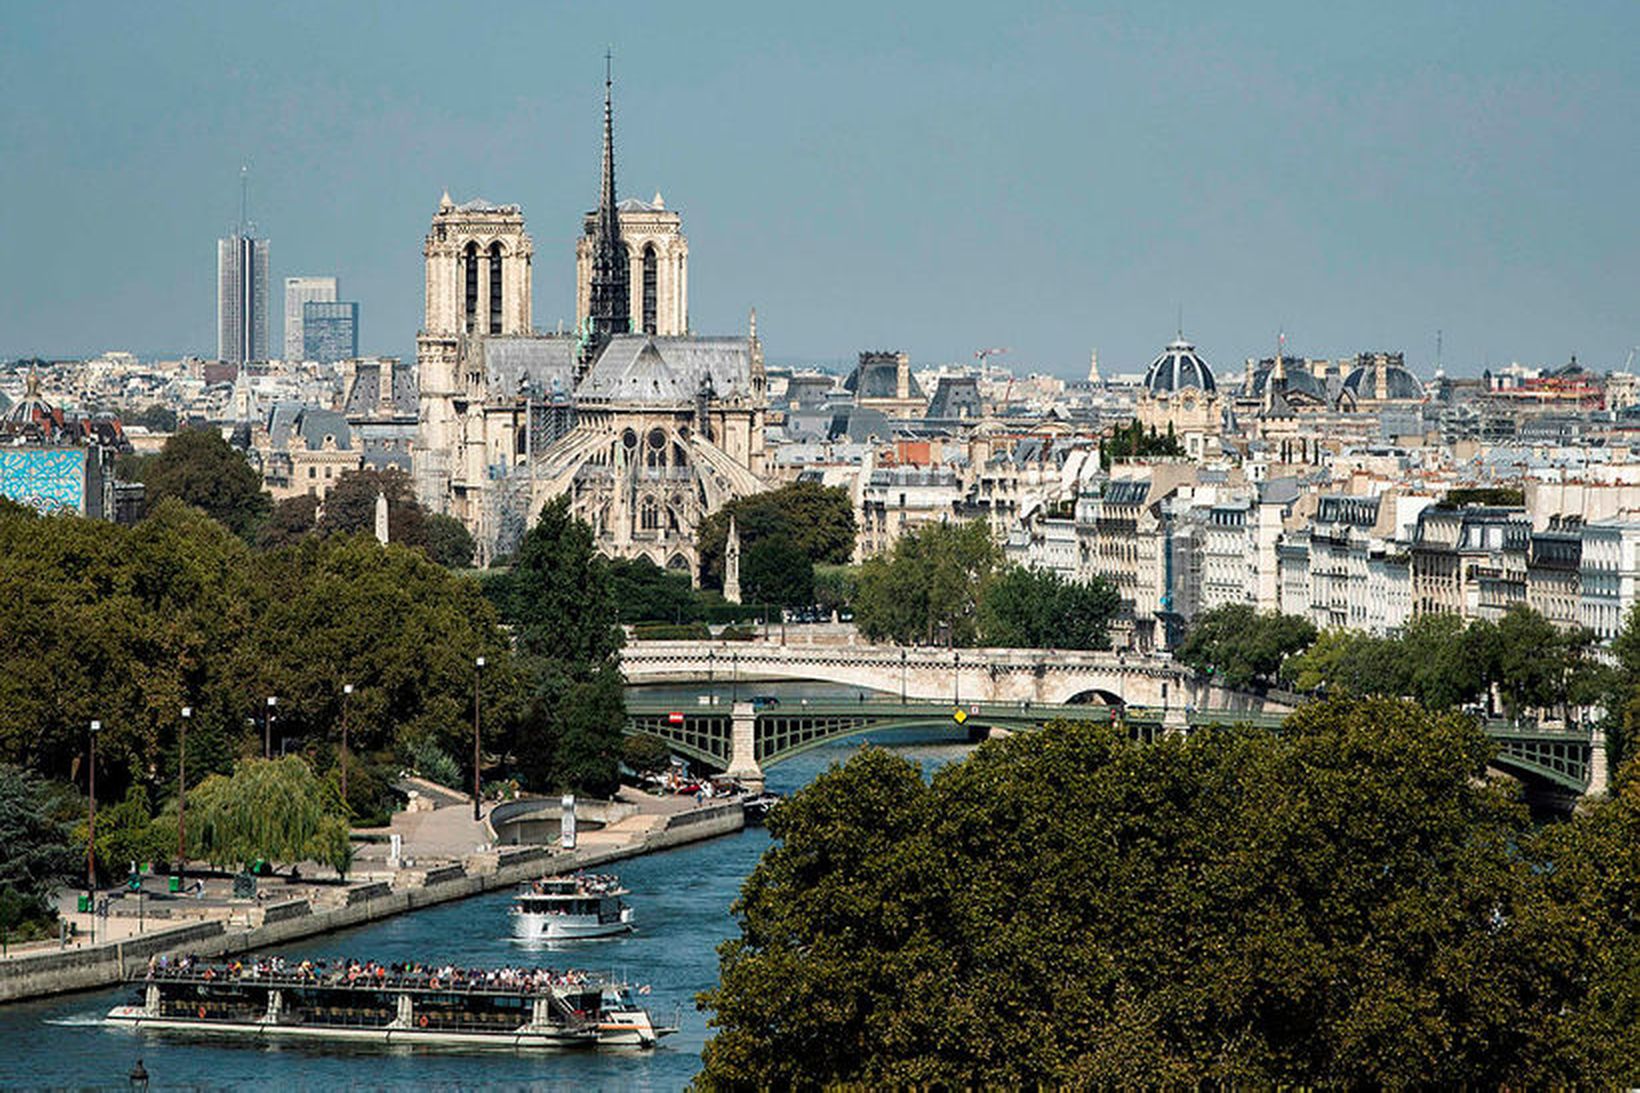 Notre Dame hefur verið eitt af helstu kennileitum Parísarborgar í …